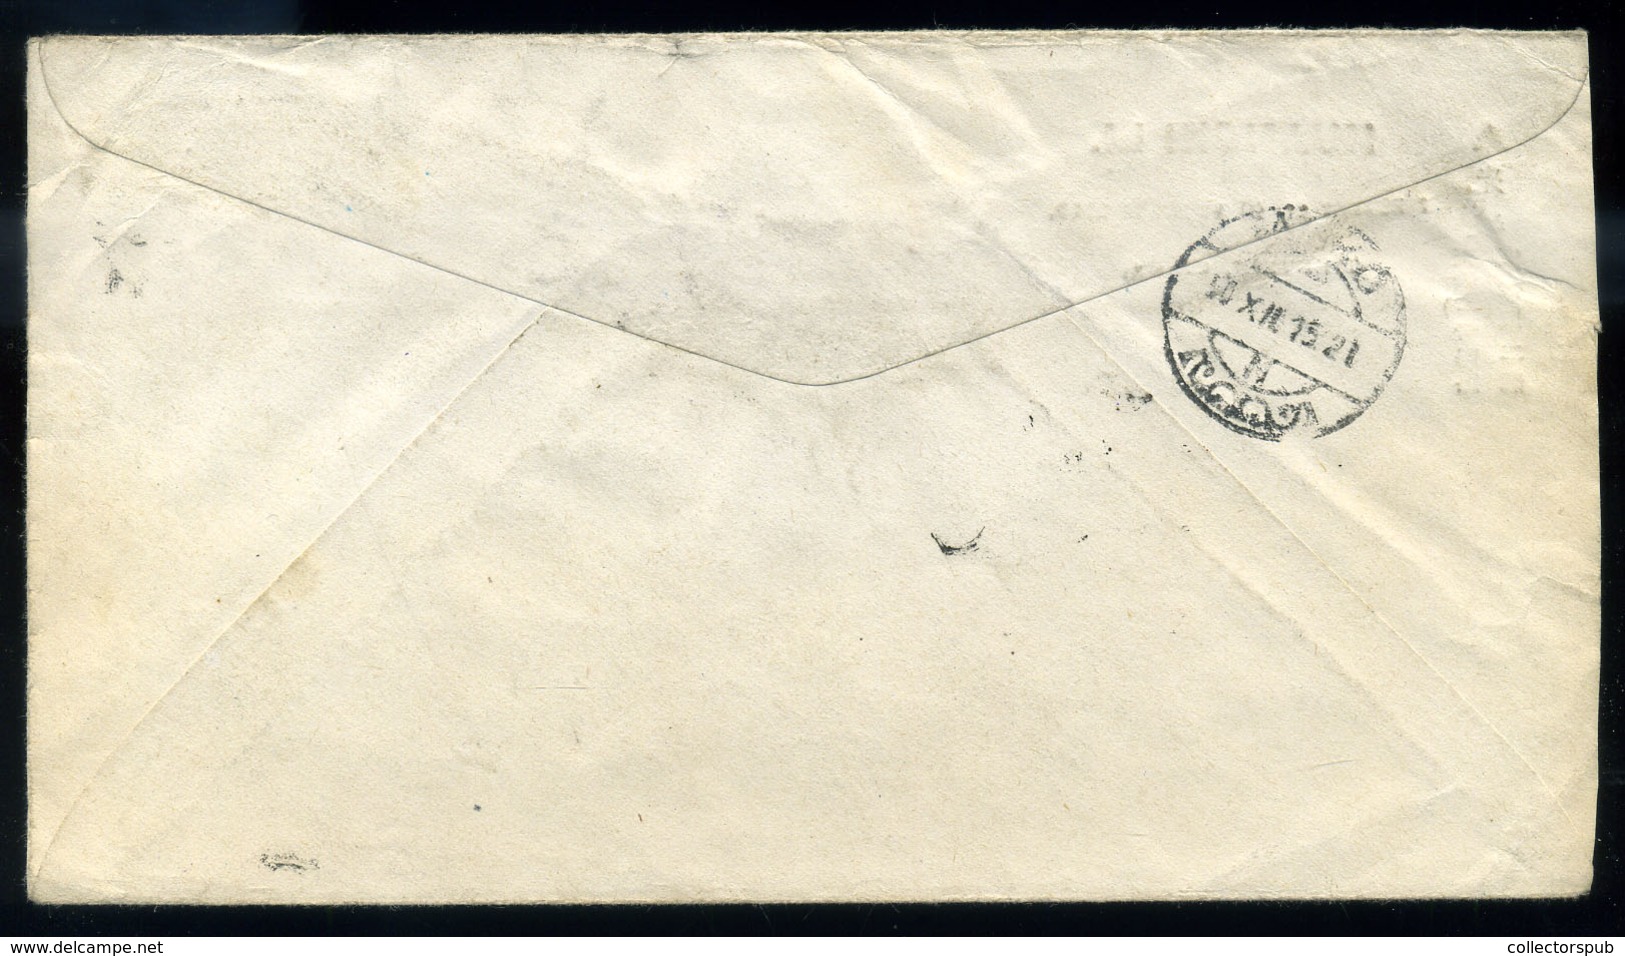 KÍNA Tientsin , Levél Magyarországra, Makóra Küldve  /  CHINA Letter To Makó, Hungary - 1912-1949 República